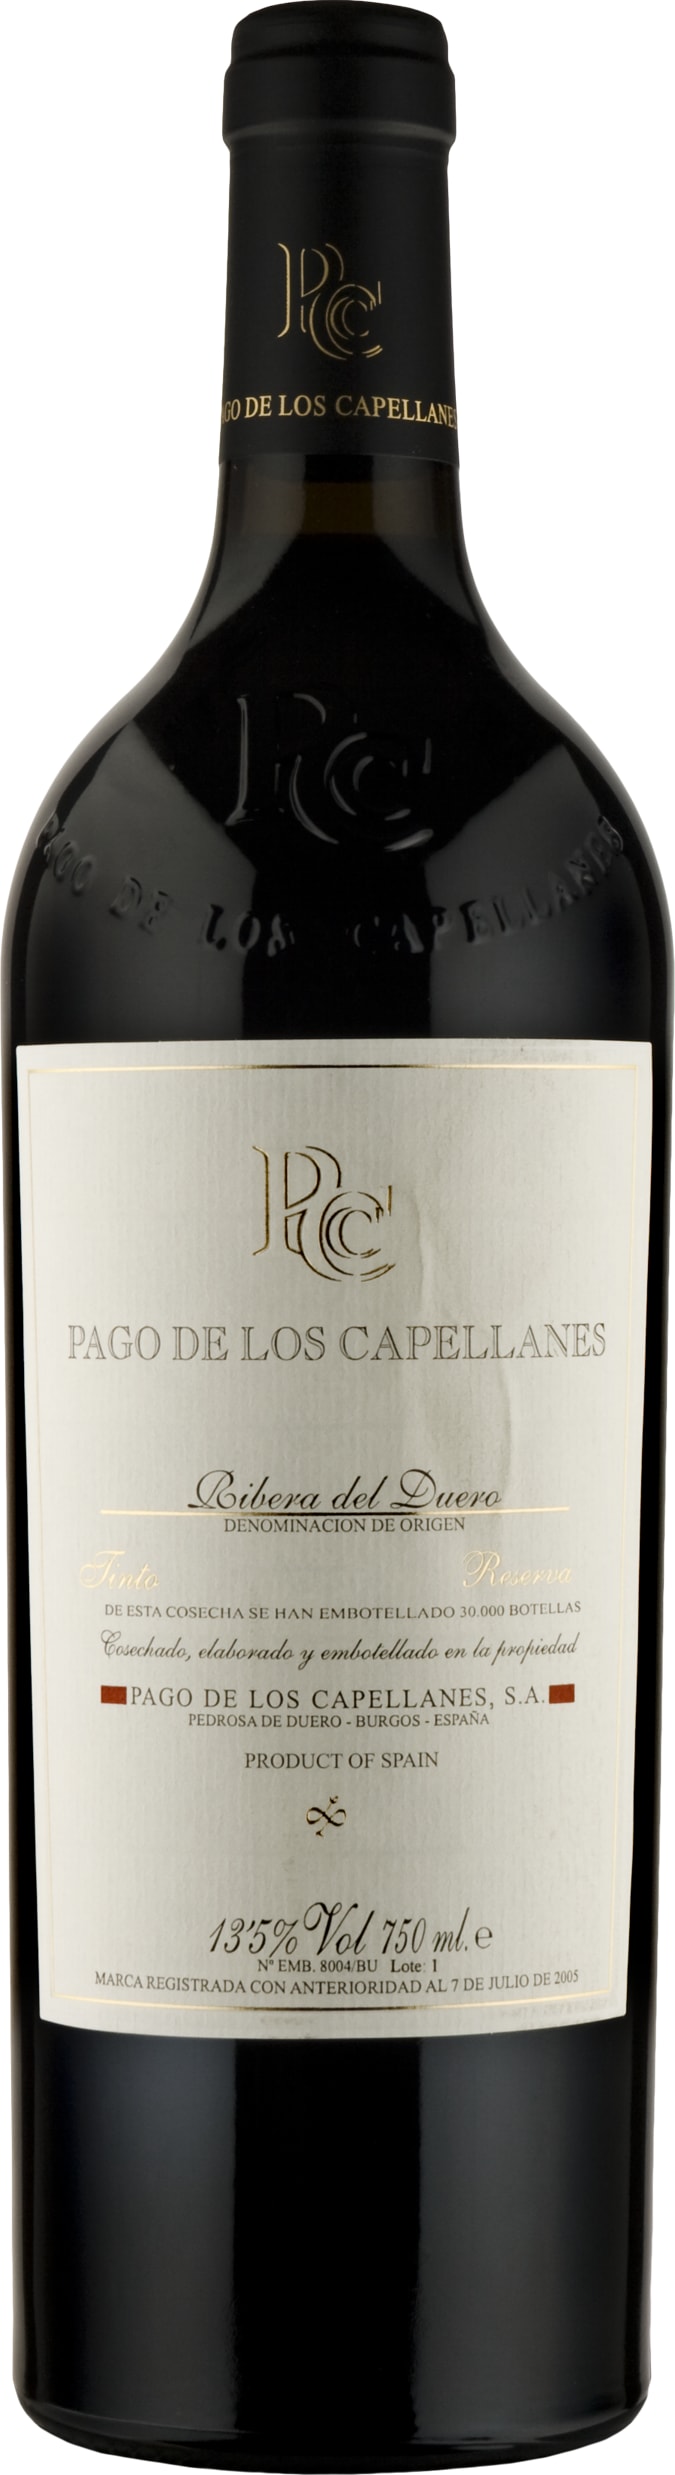 Pago de los Capellanes Reserva 2019 75cl - Buy Pago de los Capellanes Wines from GREAT WINES DIRECT wine shop